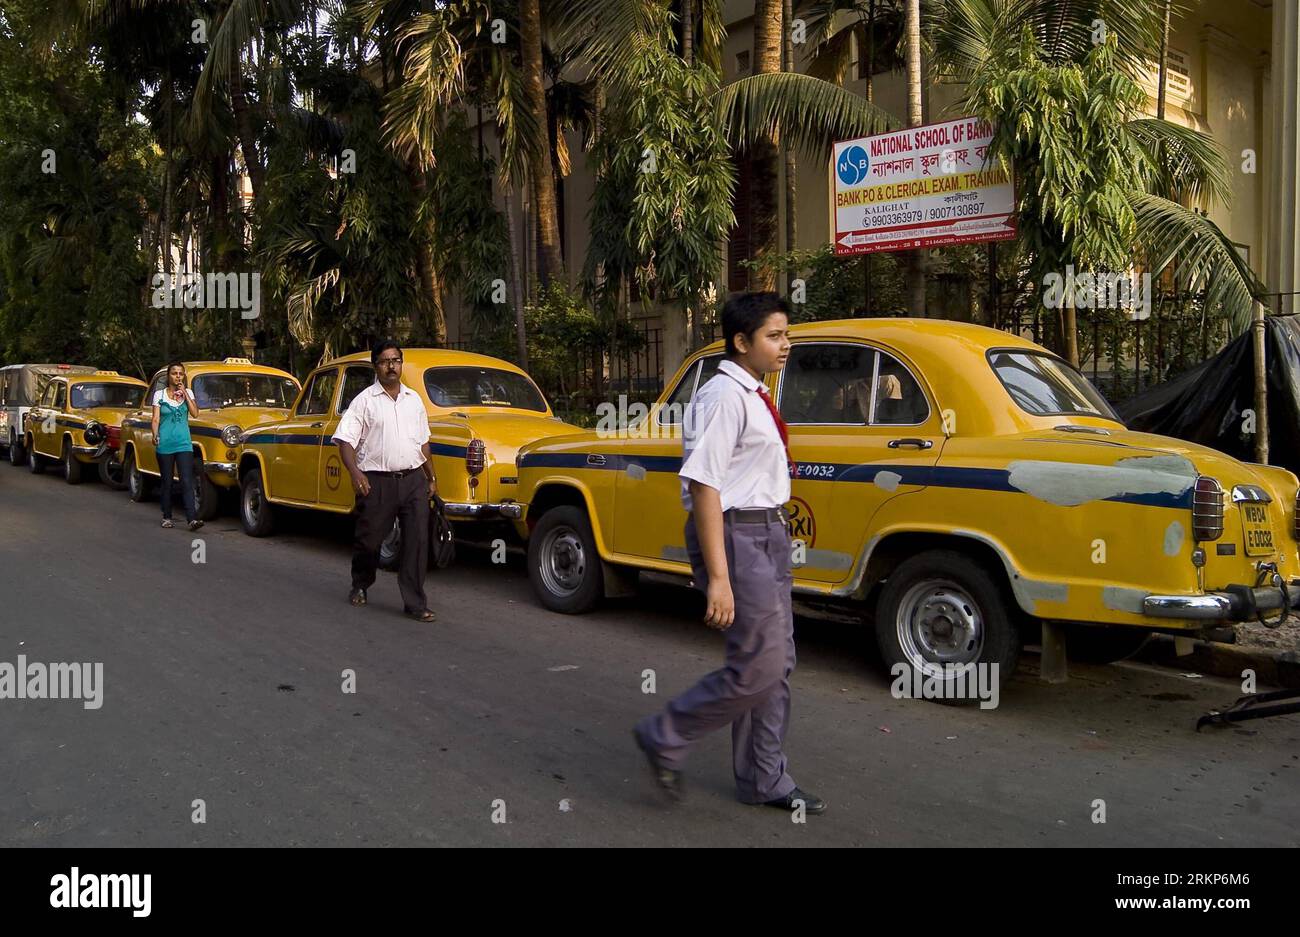 Bildnummer: 57913719 Datum: 19.04.2012 Copyright: imago/Xinhua (120419) -- CALCUTTA, 19. April 2012 (Xinhua) -- indische Pendler laufen am Taxistand in Calcutta, der Hauptstadt des ostindischen Bundesstaates Westbengalen, am 19. April 2012 vorbei. Tausende von Pendlern, insbesondere Bürobesuchern, wurden in dieser Metropole im Osten Indiens schikaniert, als die Mehrheit der Taxifahrer am Donnerstag in einen Streik ging, um gegen die Greueltaten der Polizei zu protestieren und einen Fahrpreis zu fordern. (Xinhua/Tumpa Mondal) (zjl) INDIA-CALCUTTA-TAXI-STRIKE PUBLICATIONxNOTxINxCHN Gesellschaft Arbeitskampf Streik Taxi Taxifahrer Premiere xbs x0x 2012 Stockfoto